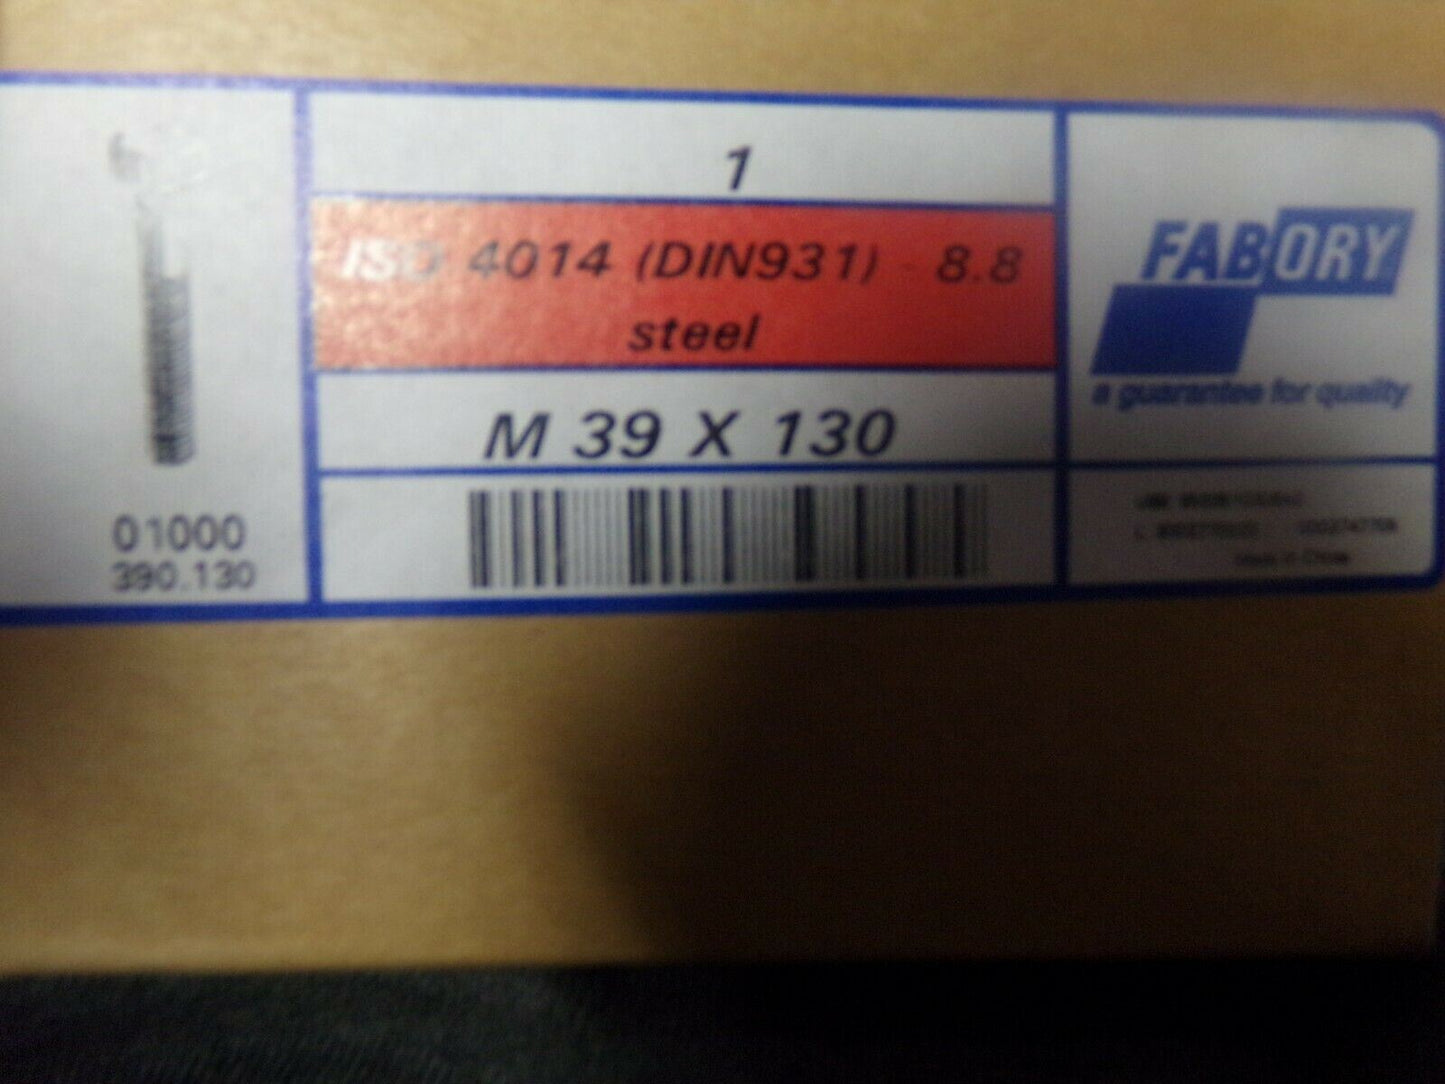 M39x130 HEX HEAD CAP SCREW ISO 4014 (DIN931)- 8.8 Steel (183777406744-NBT02)